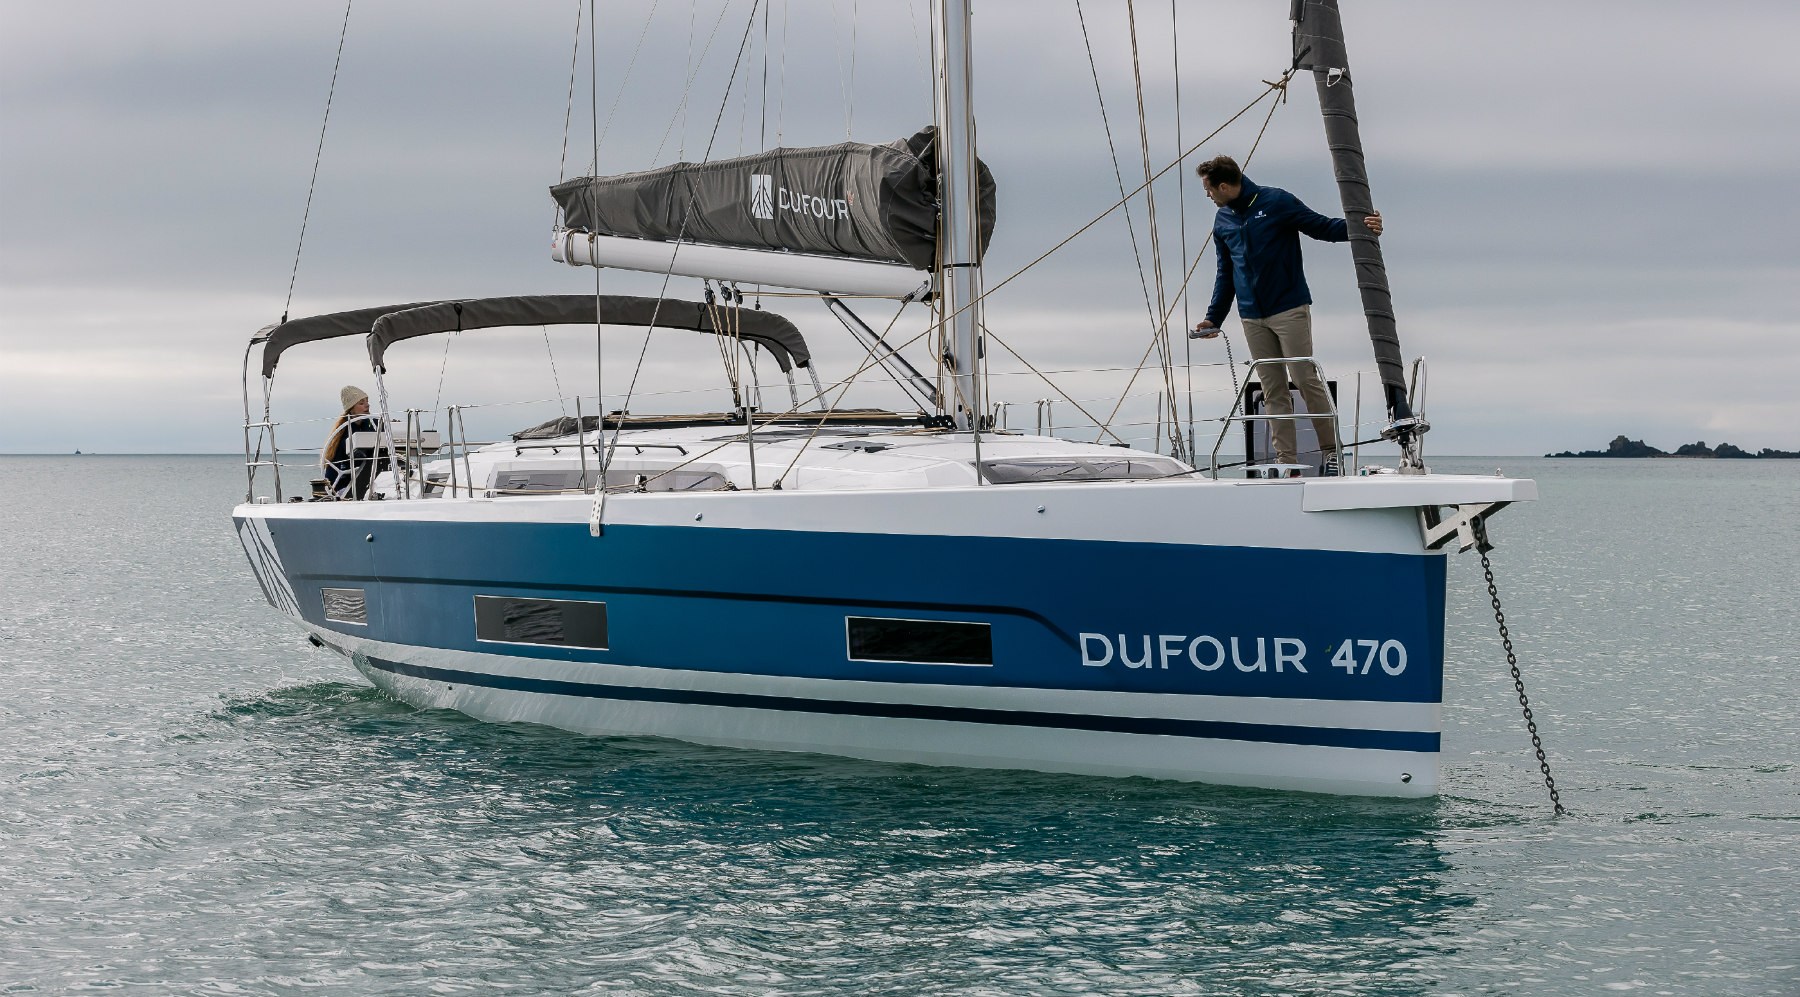 Le nouveau Dufour 470, Chantier Dufour Yachts, Baie de Quiberon le 16 mars 2021, Photo © Jean-Marie LIOT / Dufour Yachts